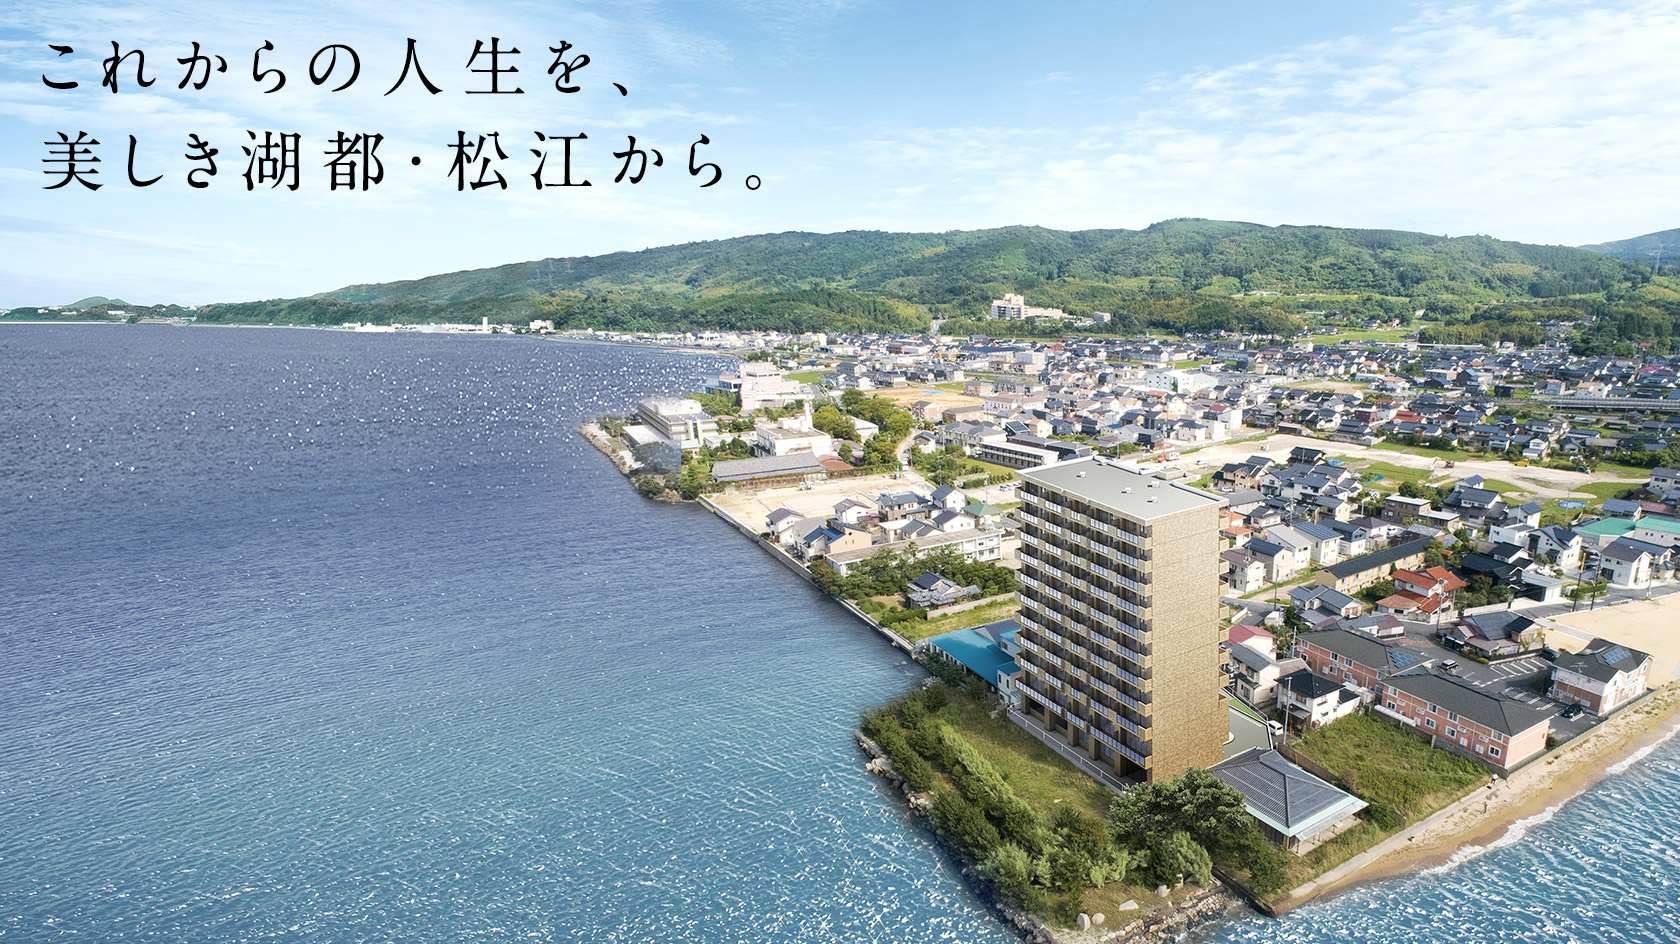 これからの人生を、美しき湖都・松江から。